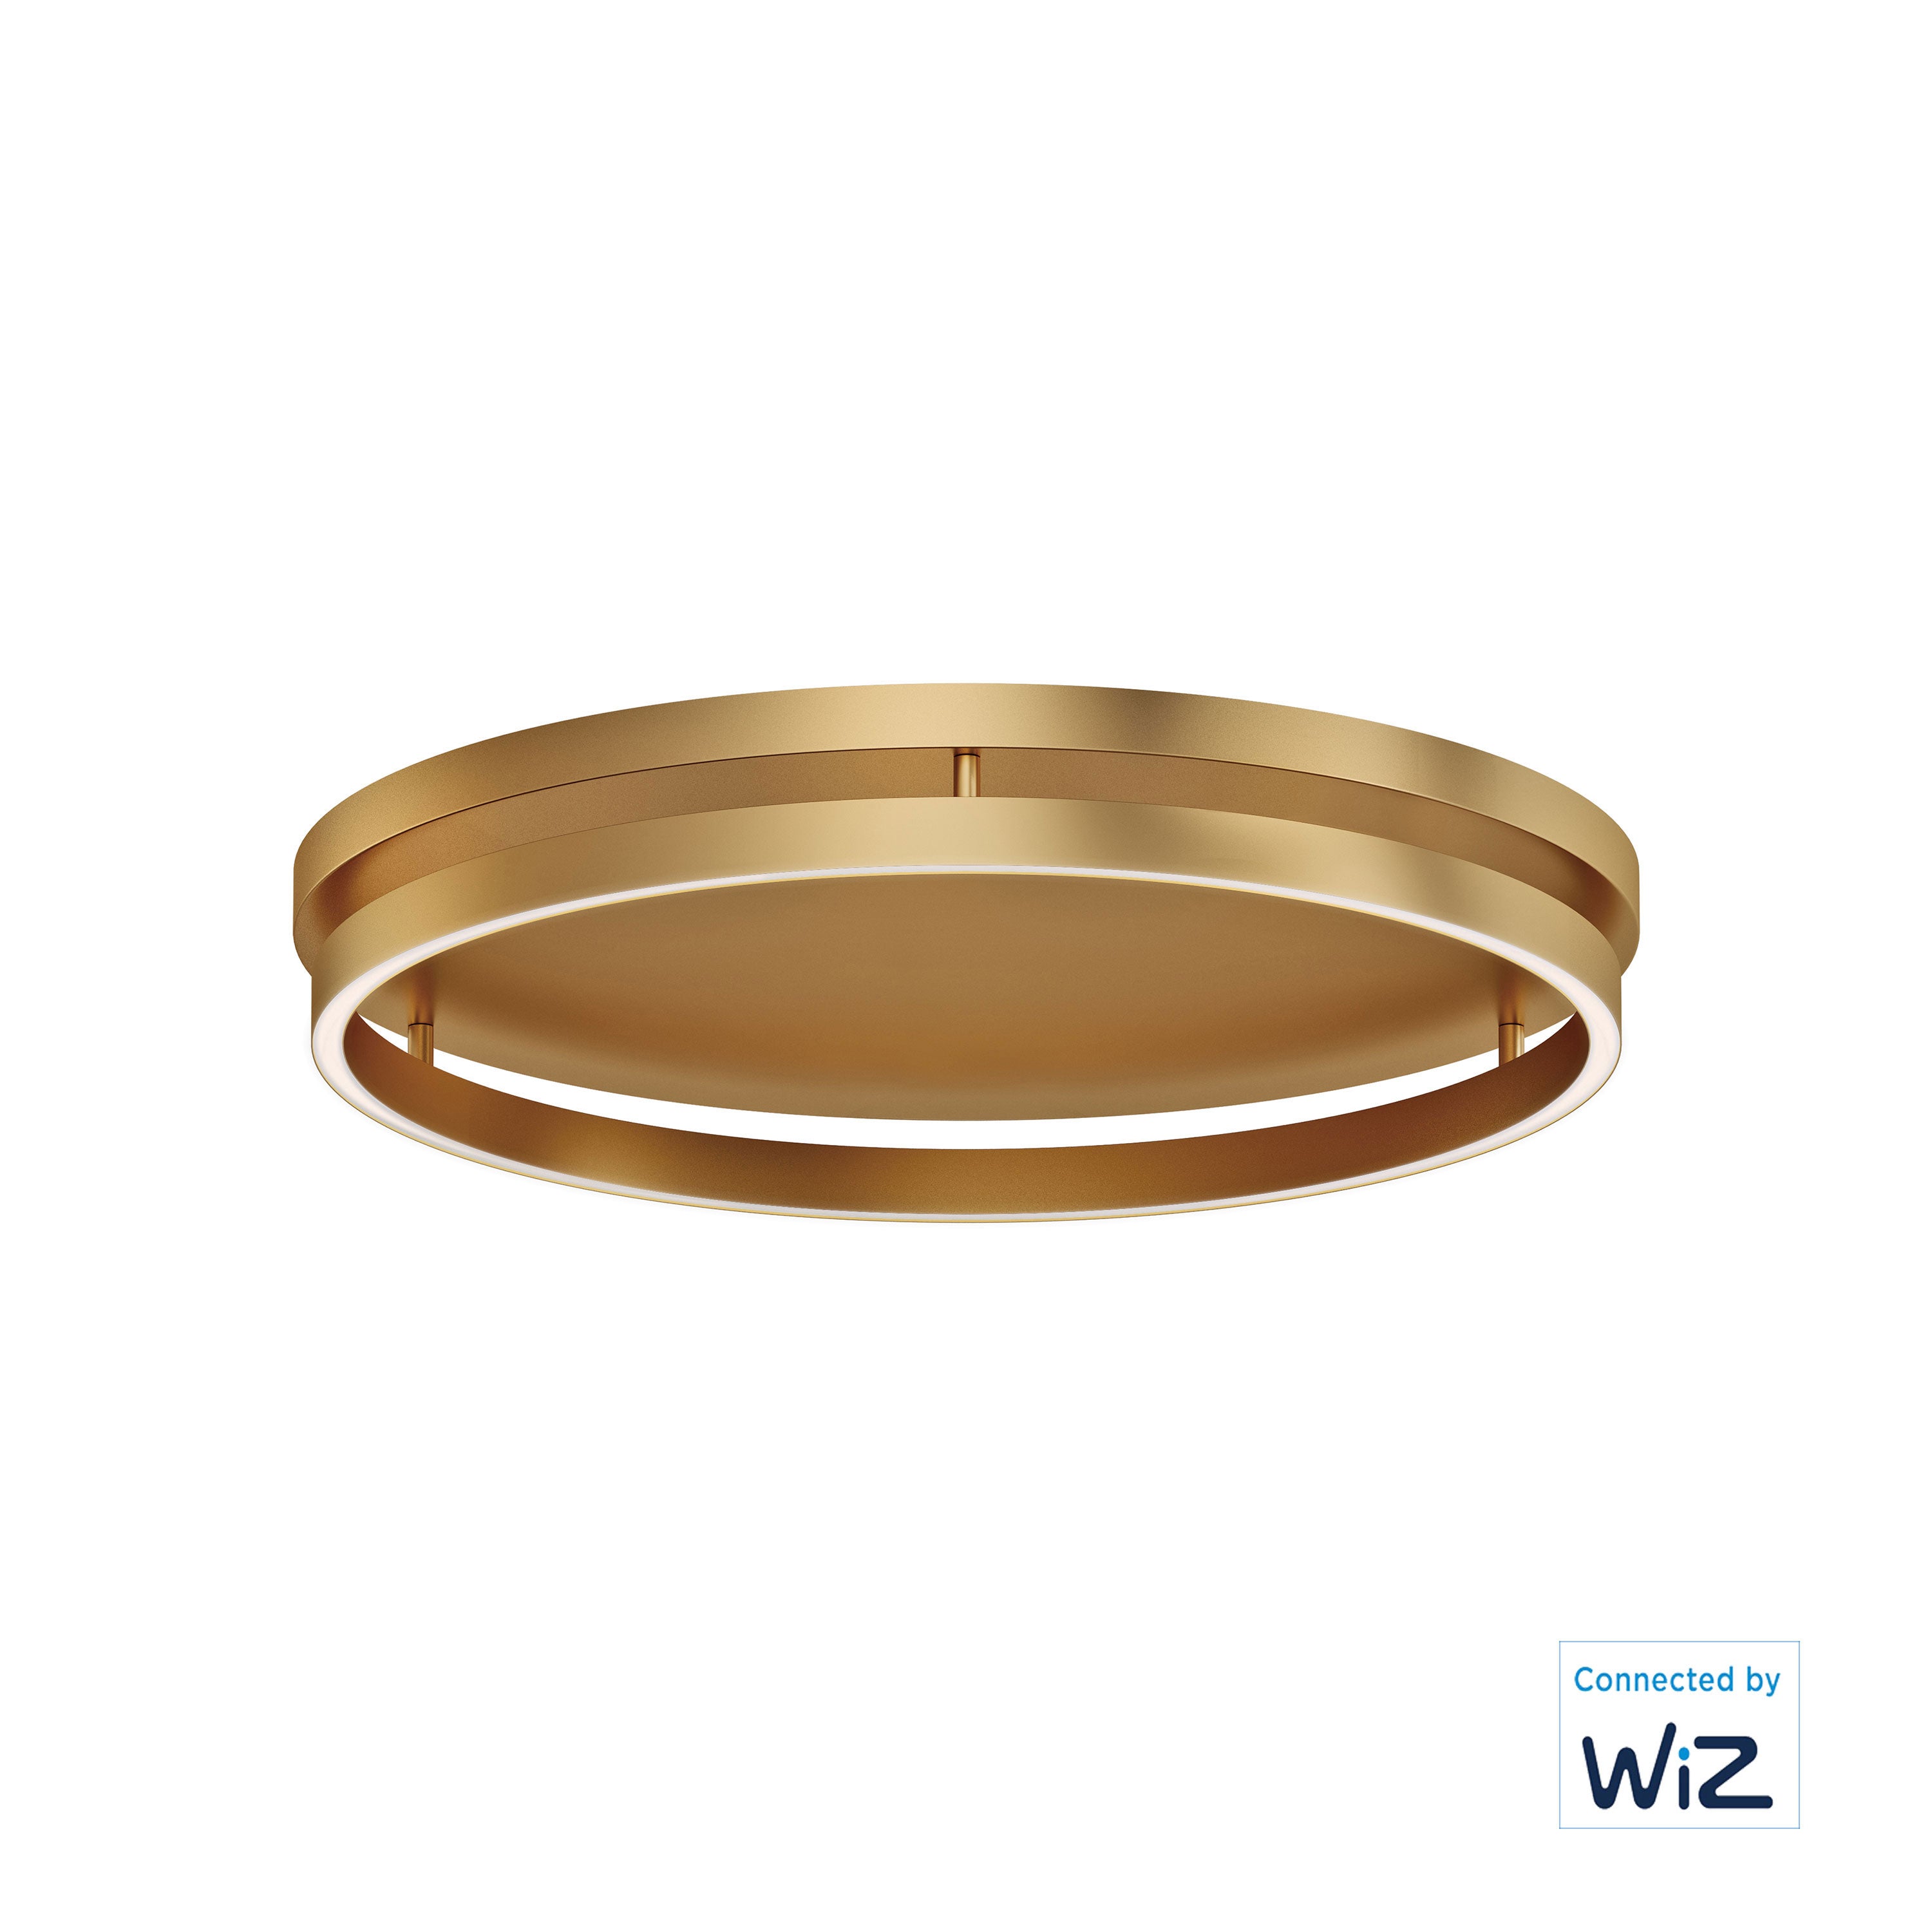 Groove WiZ-Flush Mount Flush Mount Ceiling Light ET2 24.5x24.5x3.25 Gold 